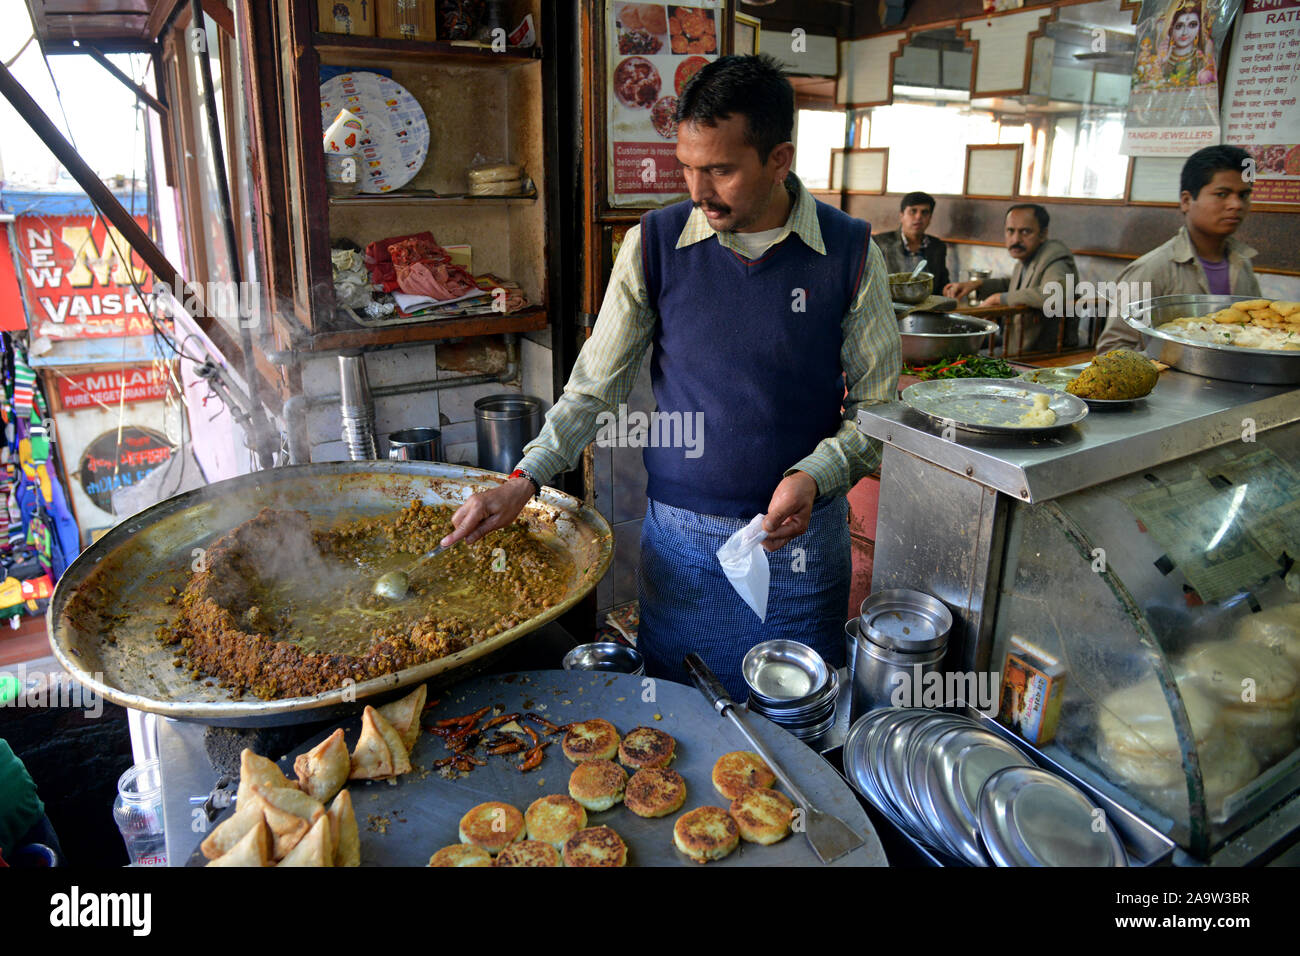 Sex chola, samosas et galettes dans le marché à Shimla..Shimla est la capitale de l'état indien de l'Himachal Pradesh, situé dans le nord de l'Inde à une altitude de 7 200 ft. En raison de son climat et la voir attire de nombreux touristes. C'est aussi l'ancienne capitale du Raj britannique.. Banque D'Images